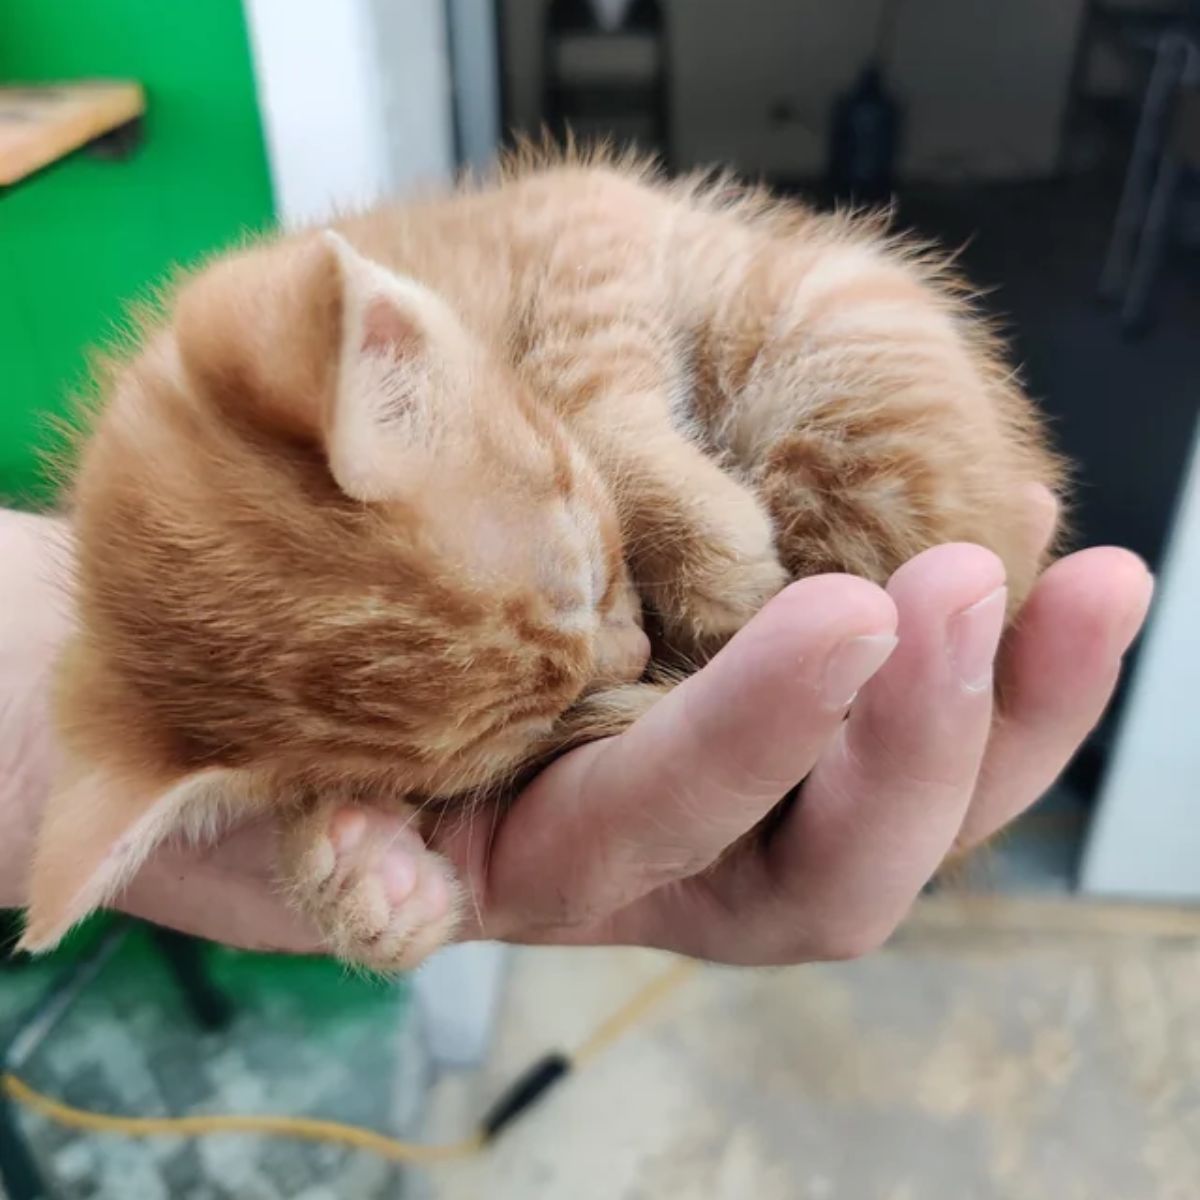 guy holding ginger kitten on palm